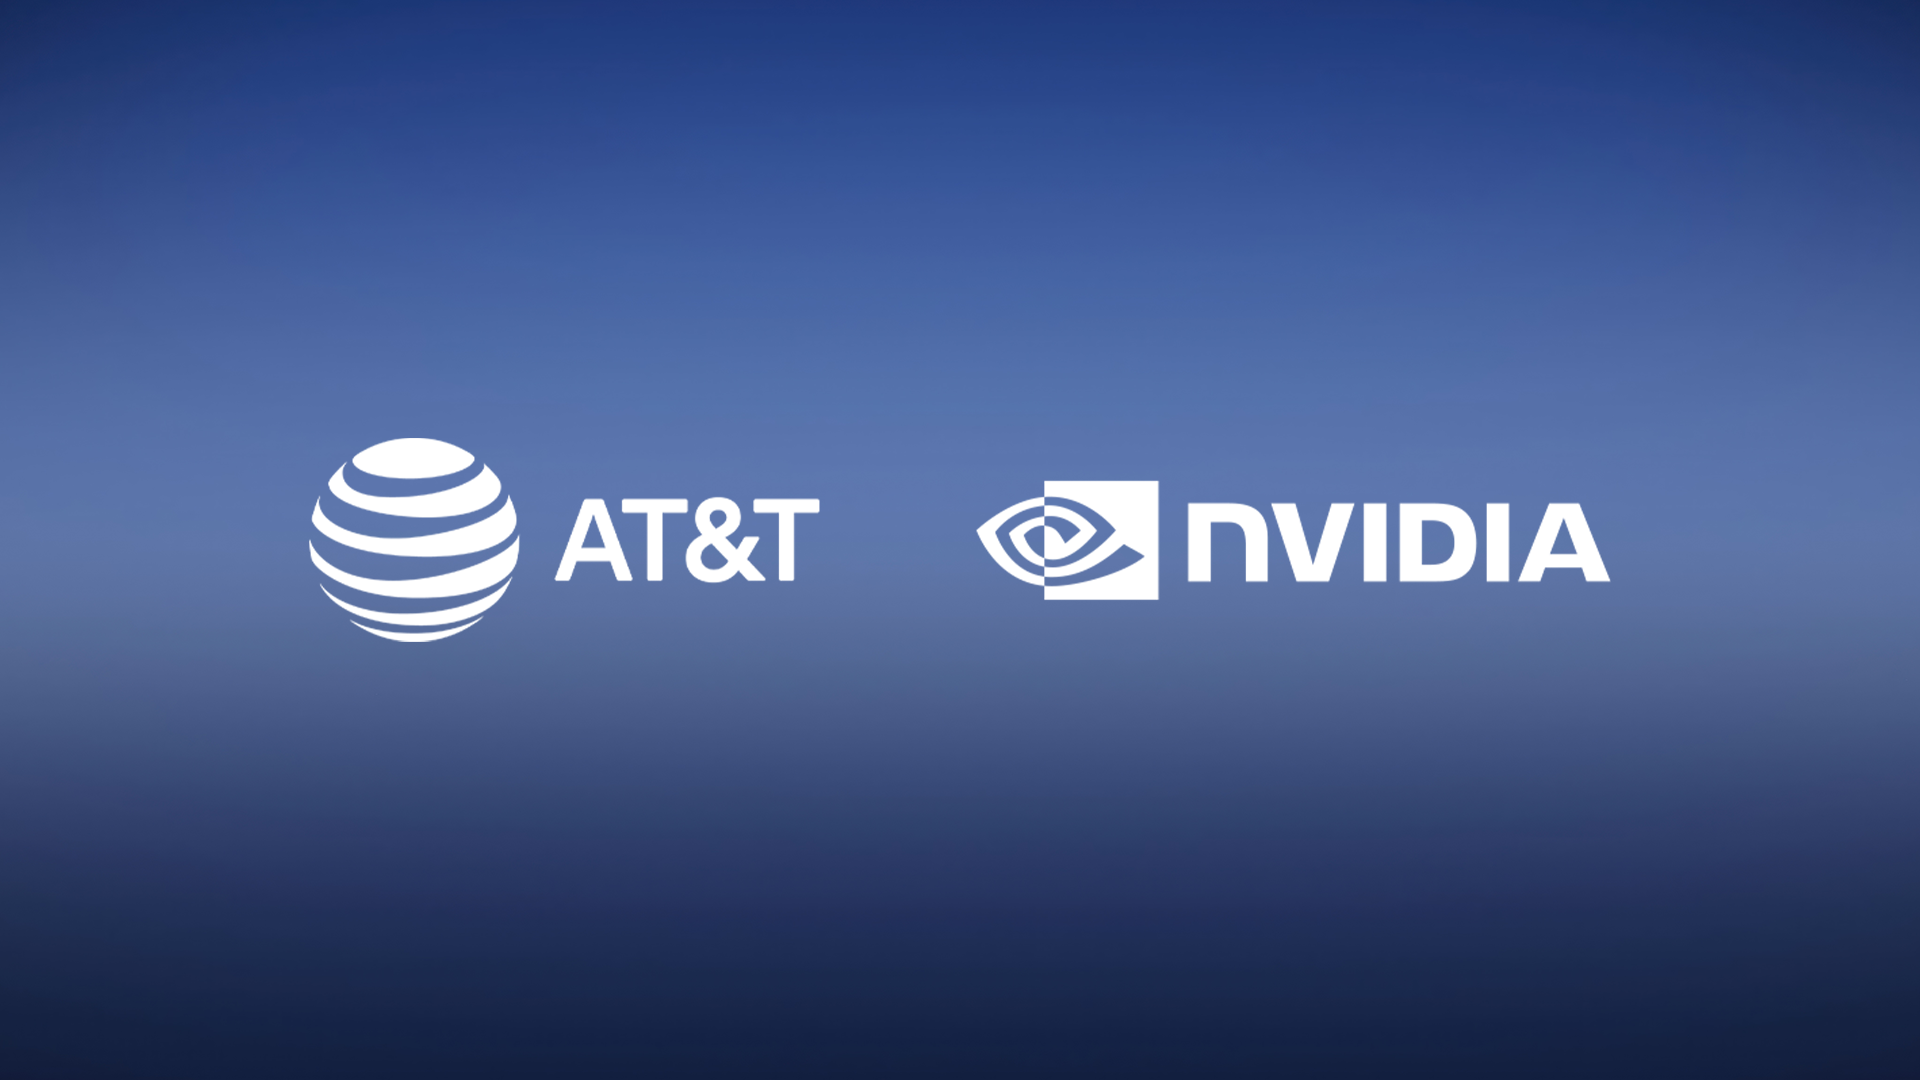 AT&T and NVIDIA logos